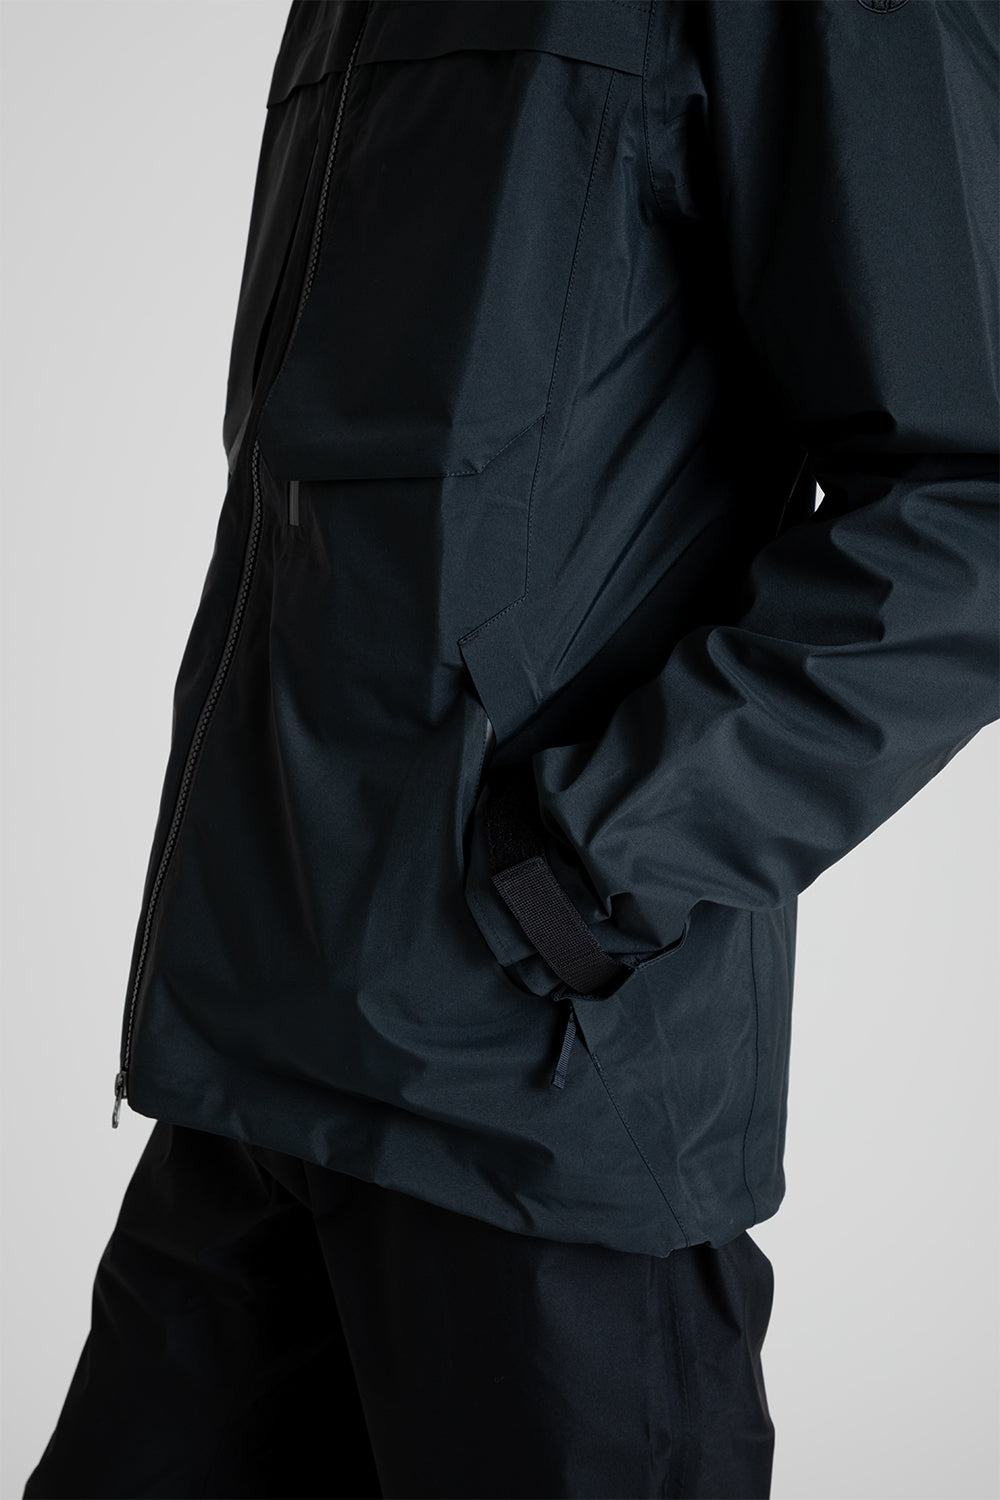 Poutnik CAW GTX Jacket in Black